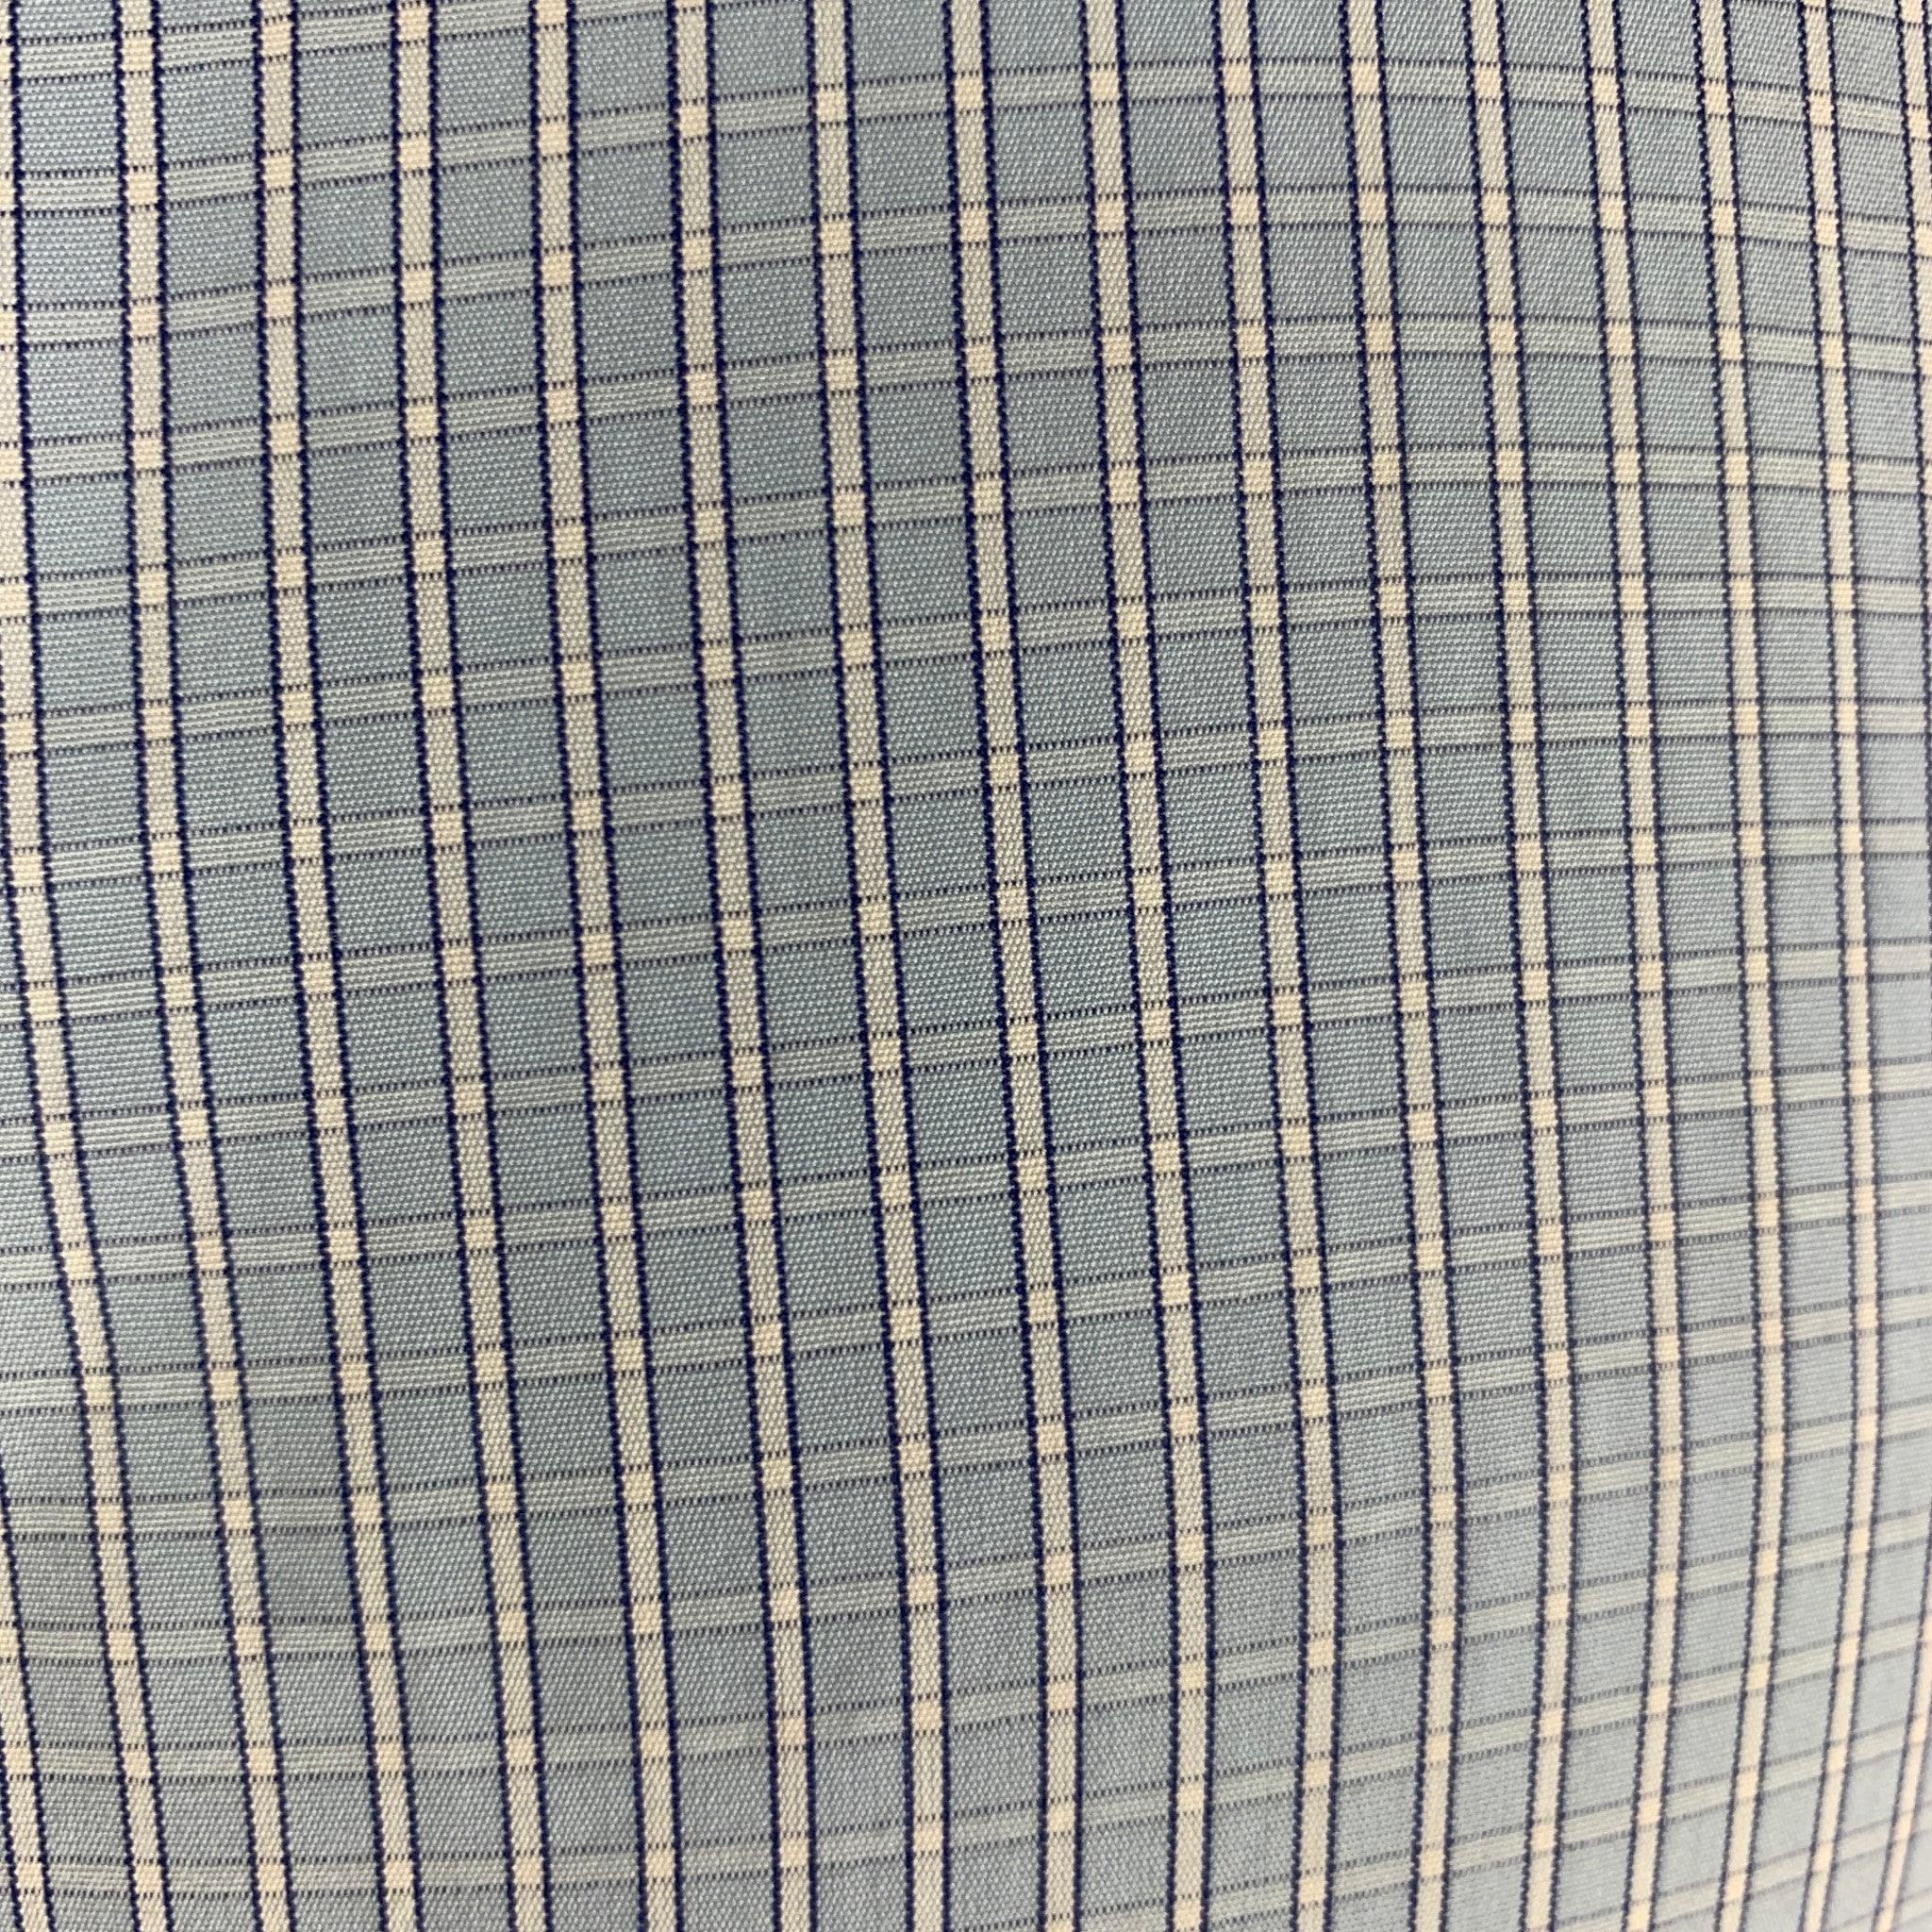 Chemise formelle boutonnée PRADA à imprimé à carreaux bleu clair et blanc, avec col ouvert et fermeture à boutons. La composition est 100% coton. Fabriquées en Italie.
Excellent état d'origine. 

Marqué :   38/15
 

Mesures : 
 
Épaule : 16 pouces